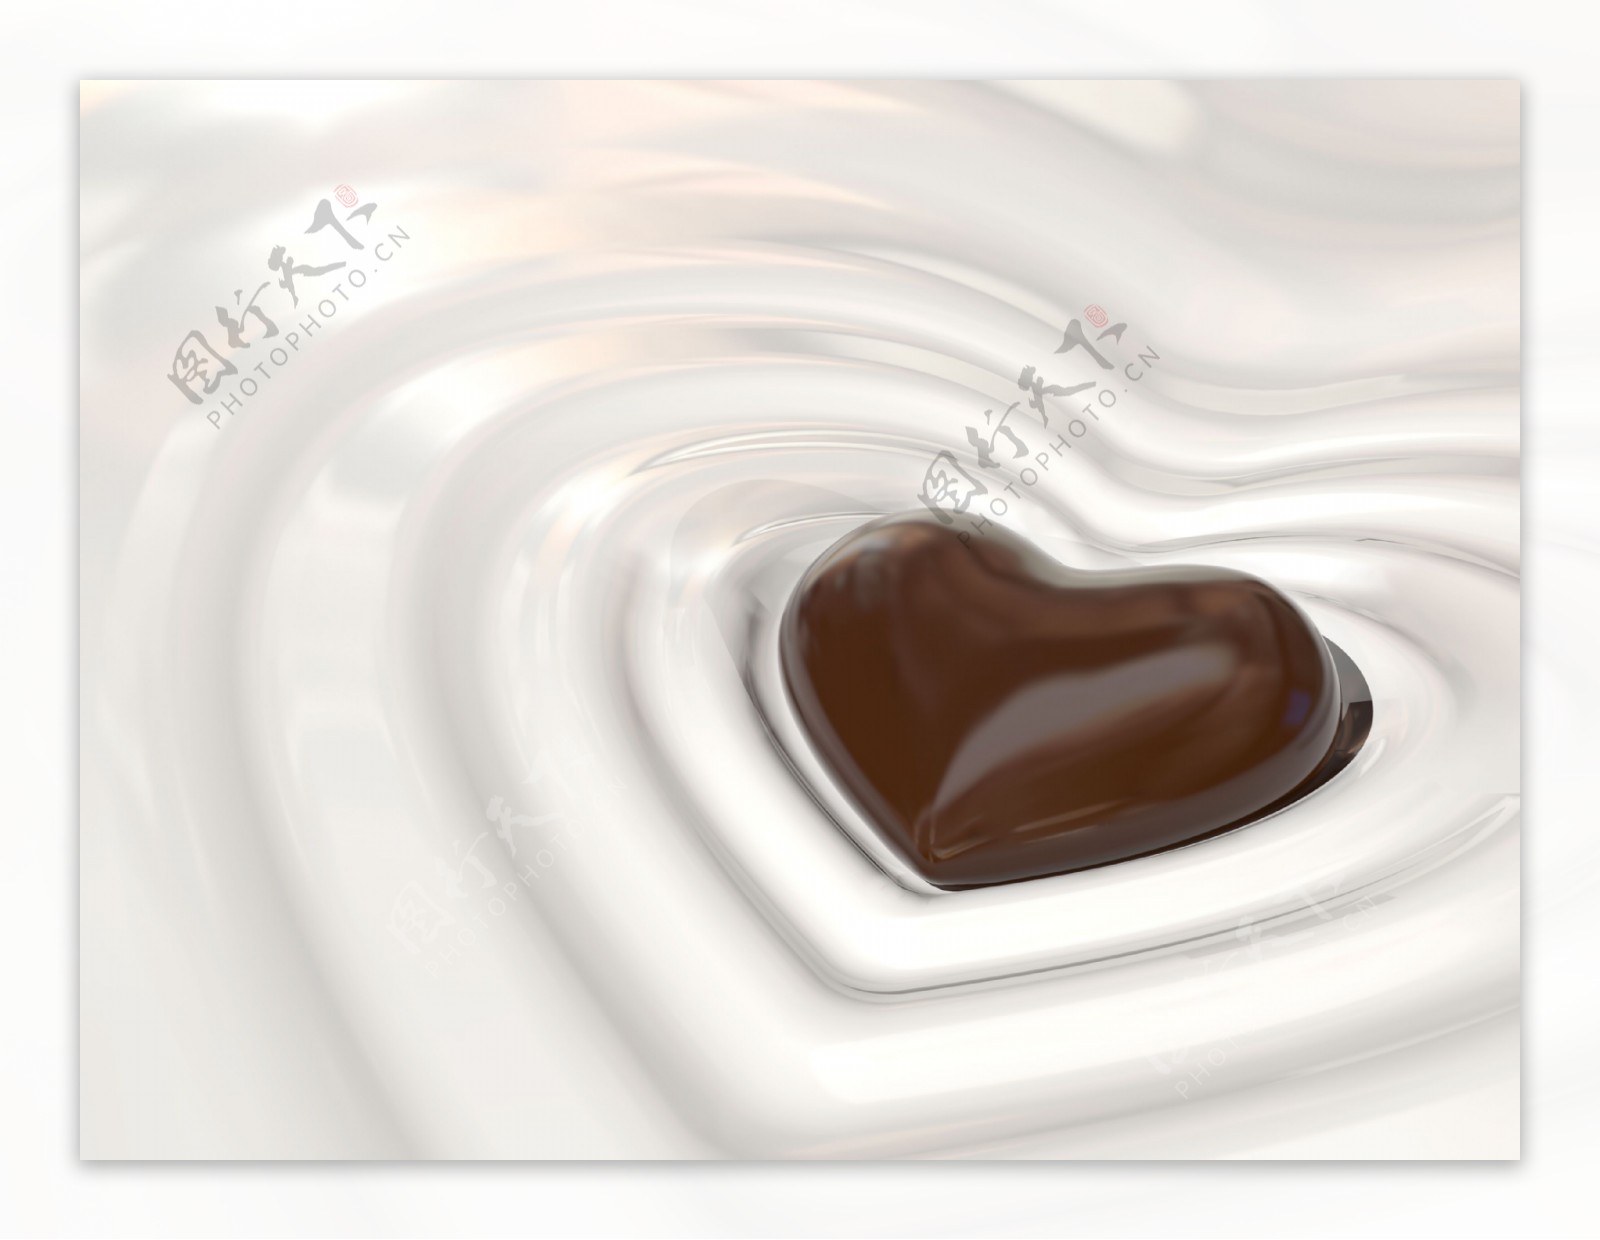 心形巧克力背景图片